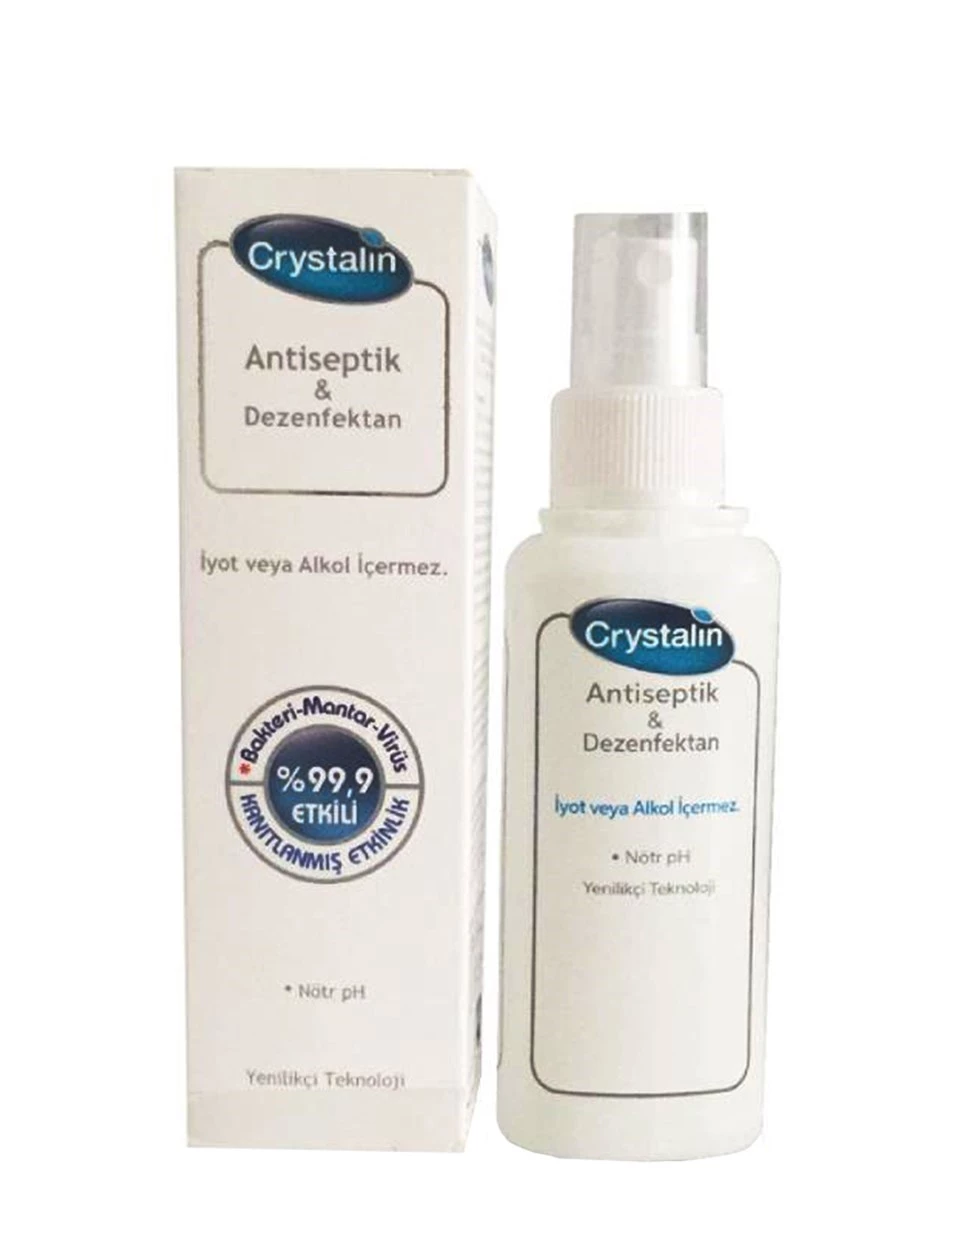 Crystalin Antiseptik & Dezenfektan Sprey 100 ml